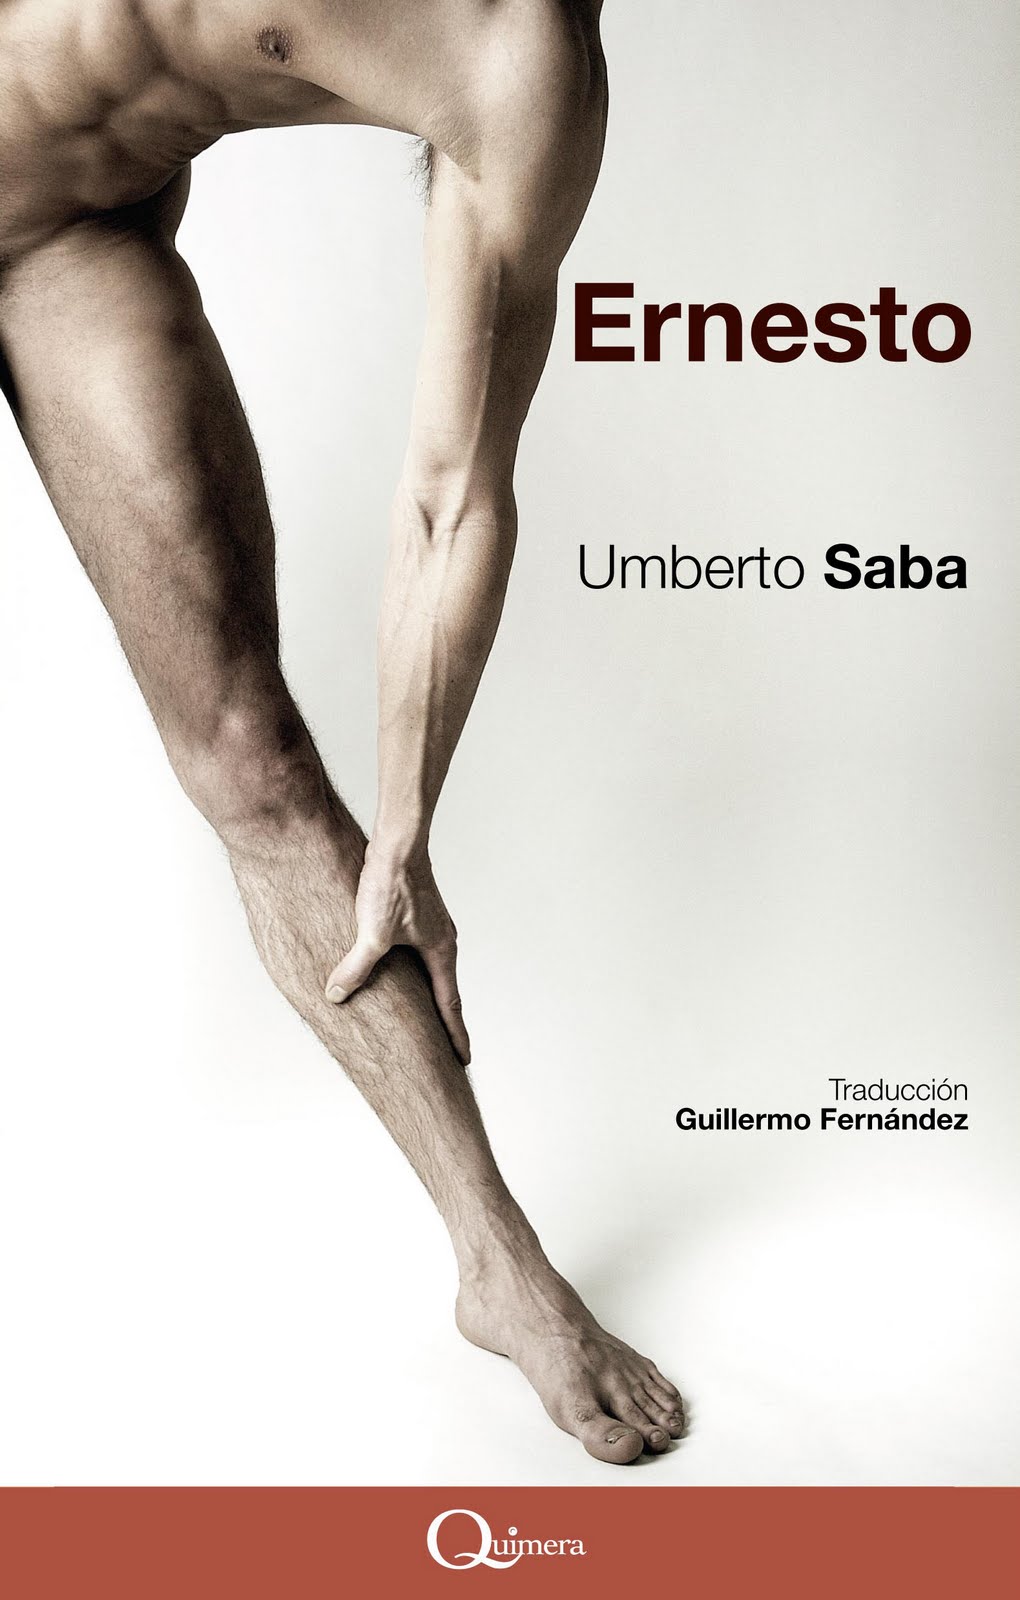 Ernesto, Umberto Saba, literatura gay